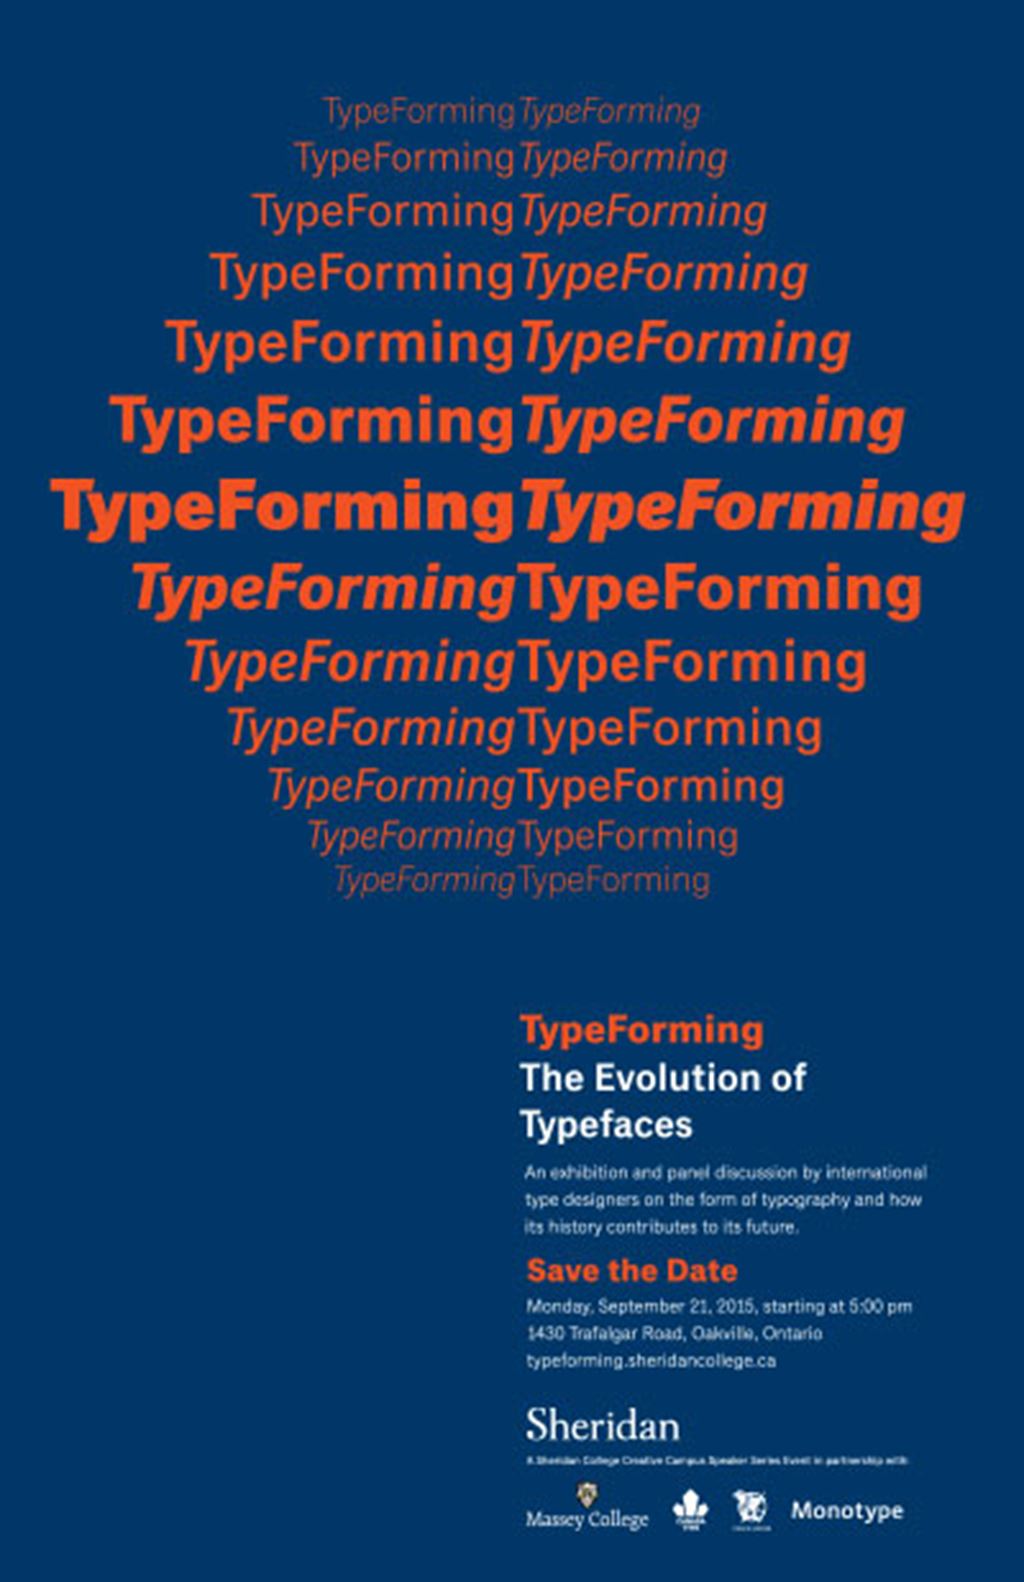 TypeForming poster